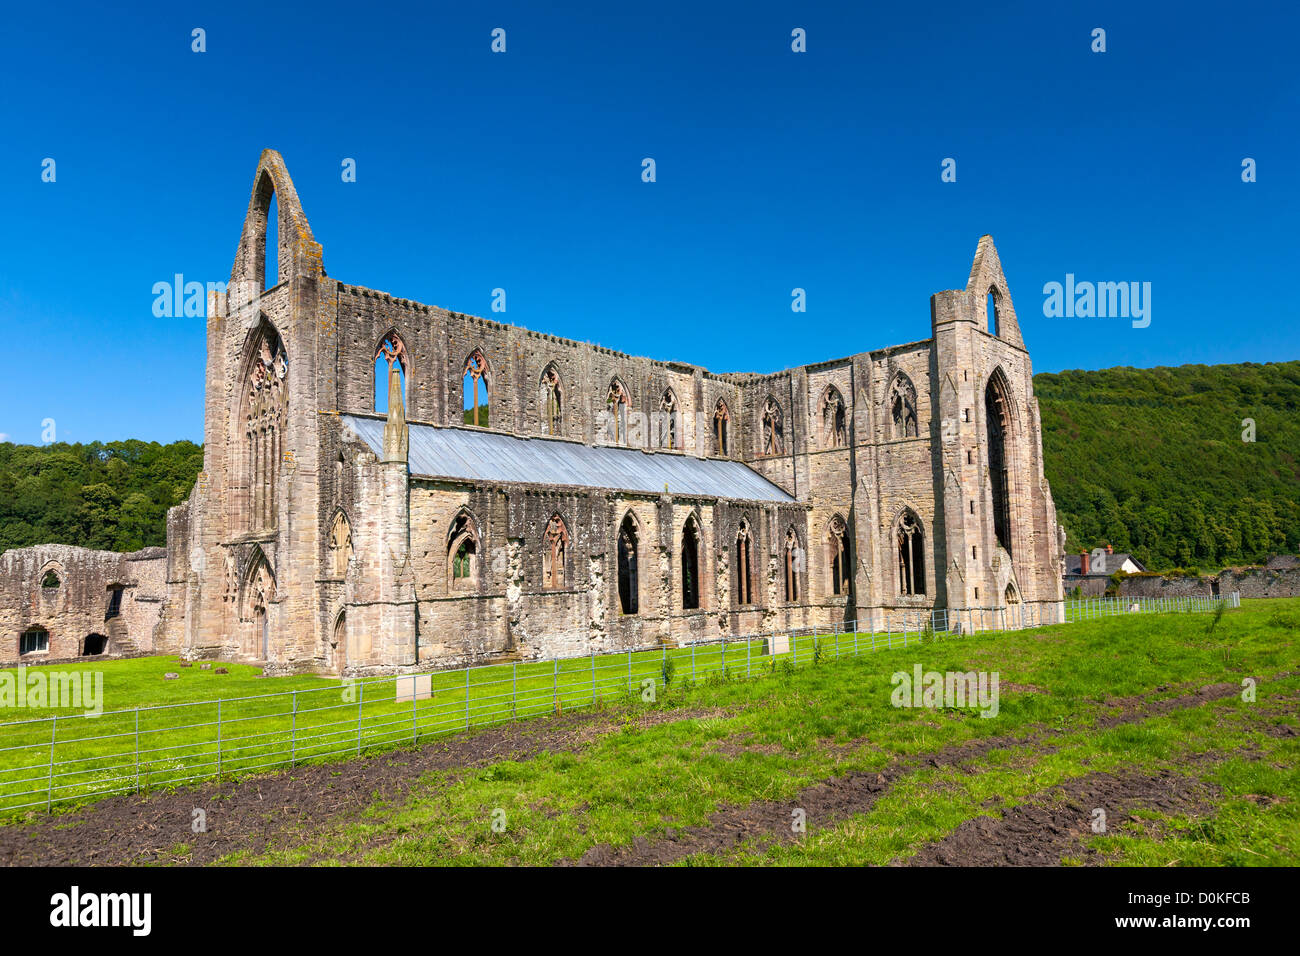 Le rovine di Tintern Abbey che è una abbazia cistercense fondata nel XII secolo da Walter de Clare. Foto Stock